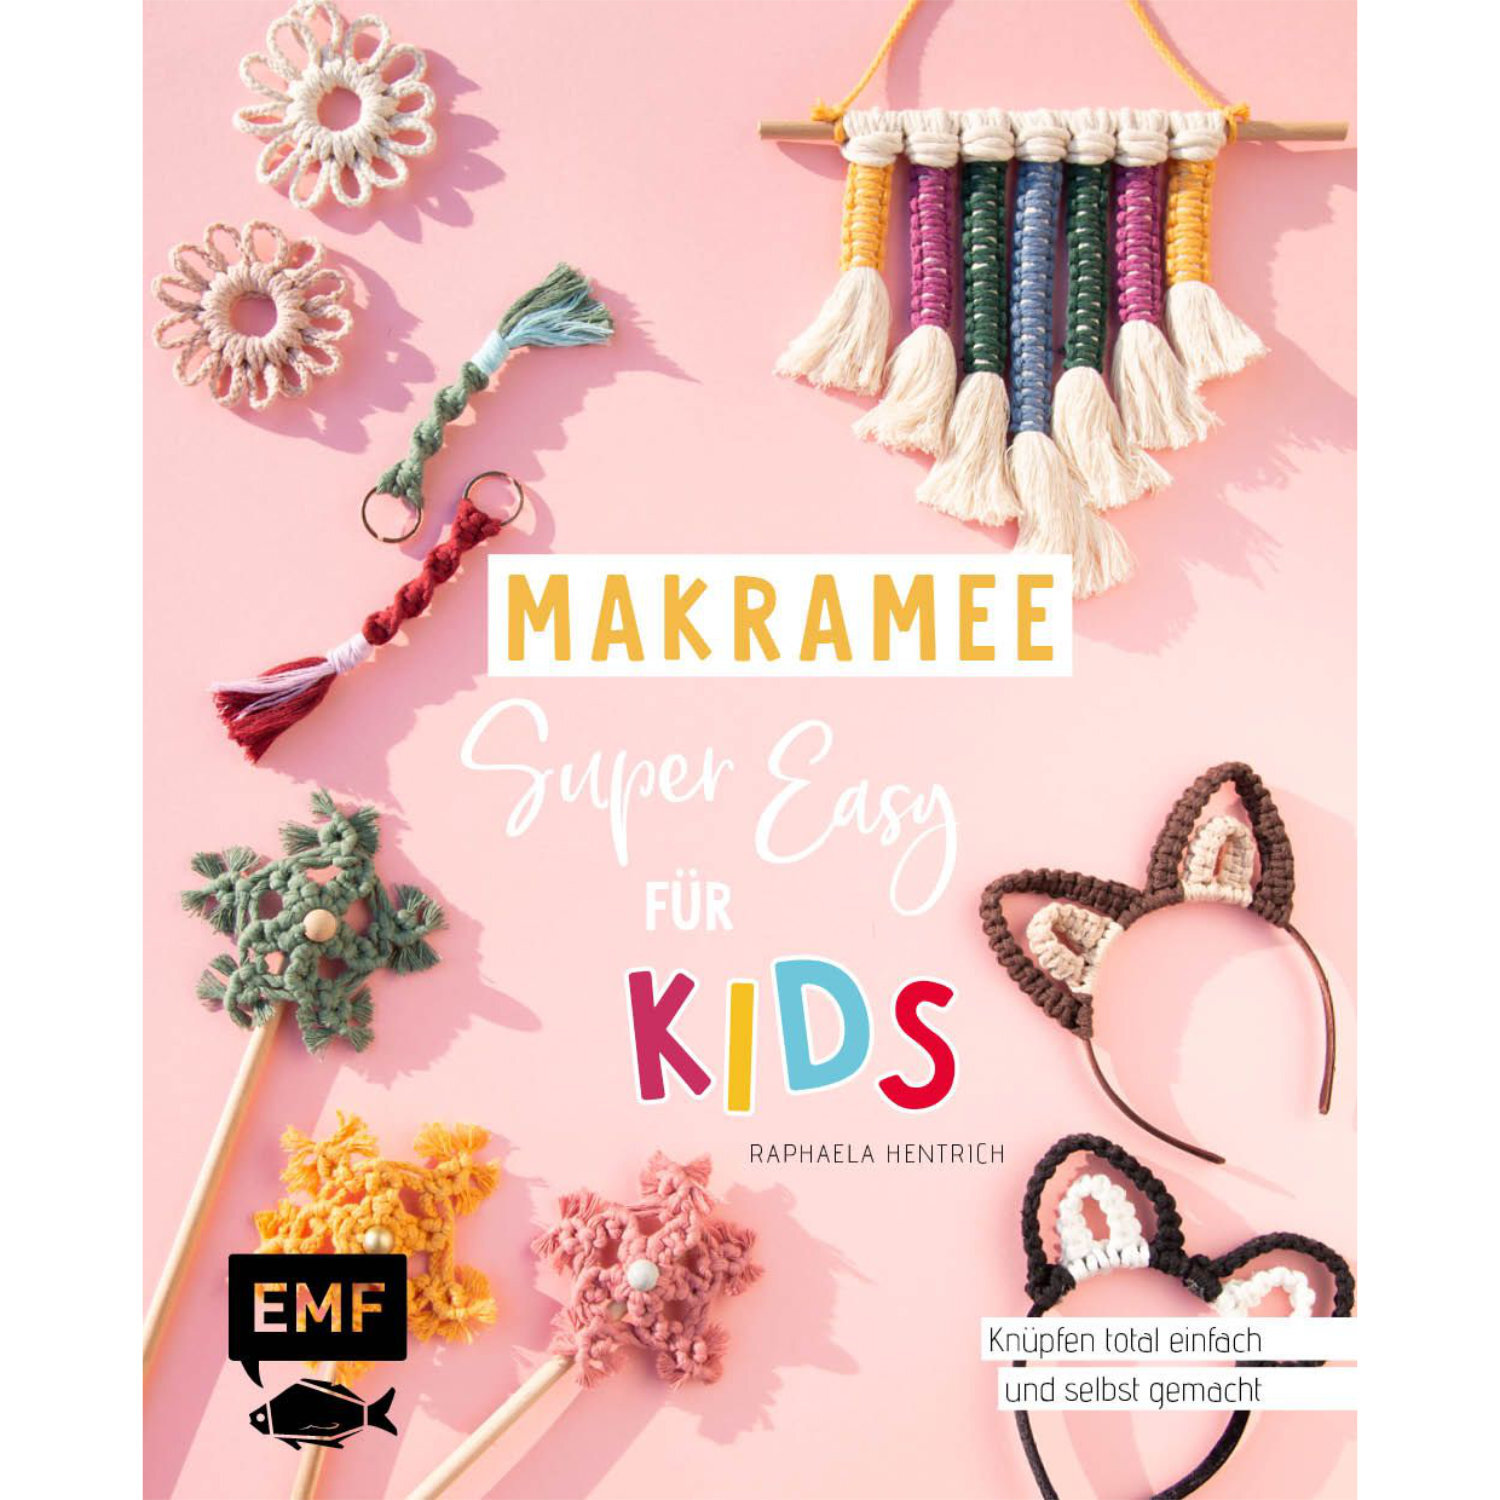 Makramee - super easy für Kids